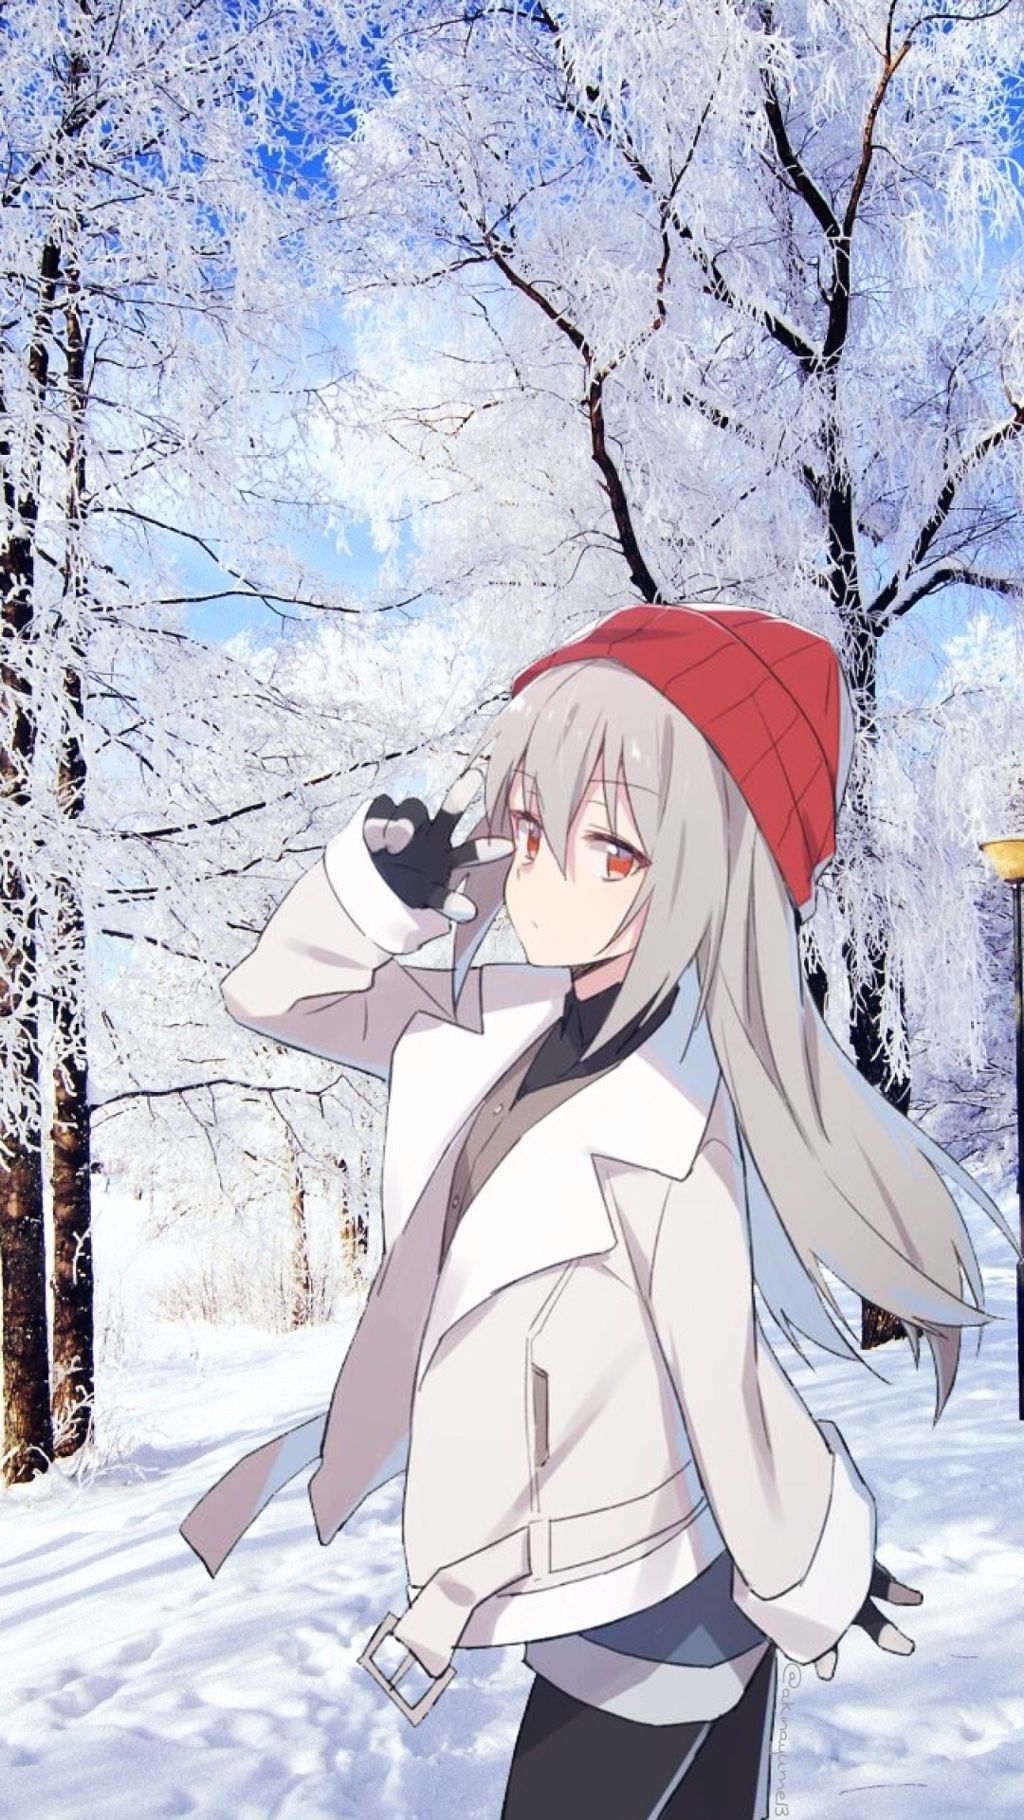 Anime Girl In Winter